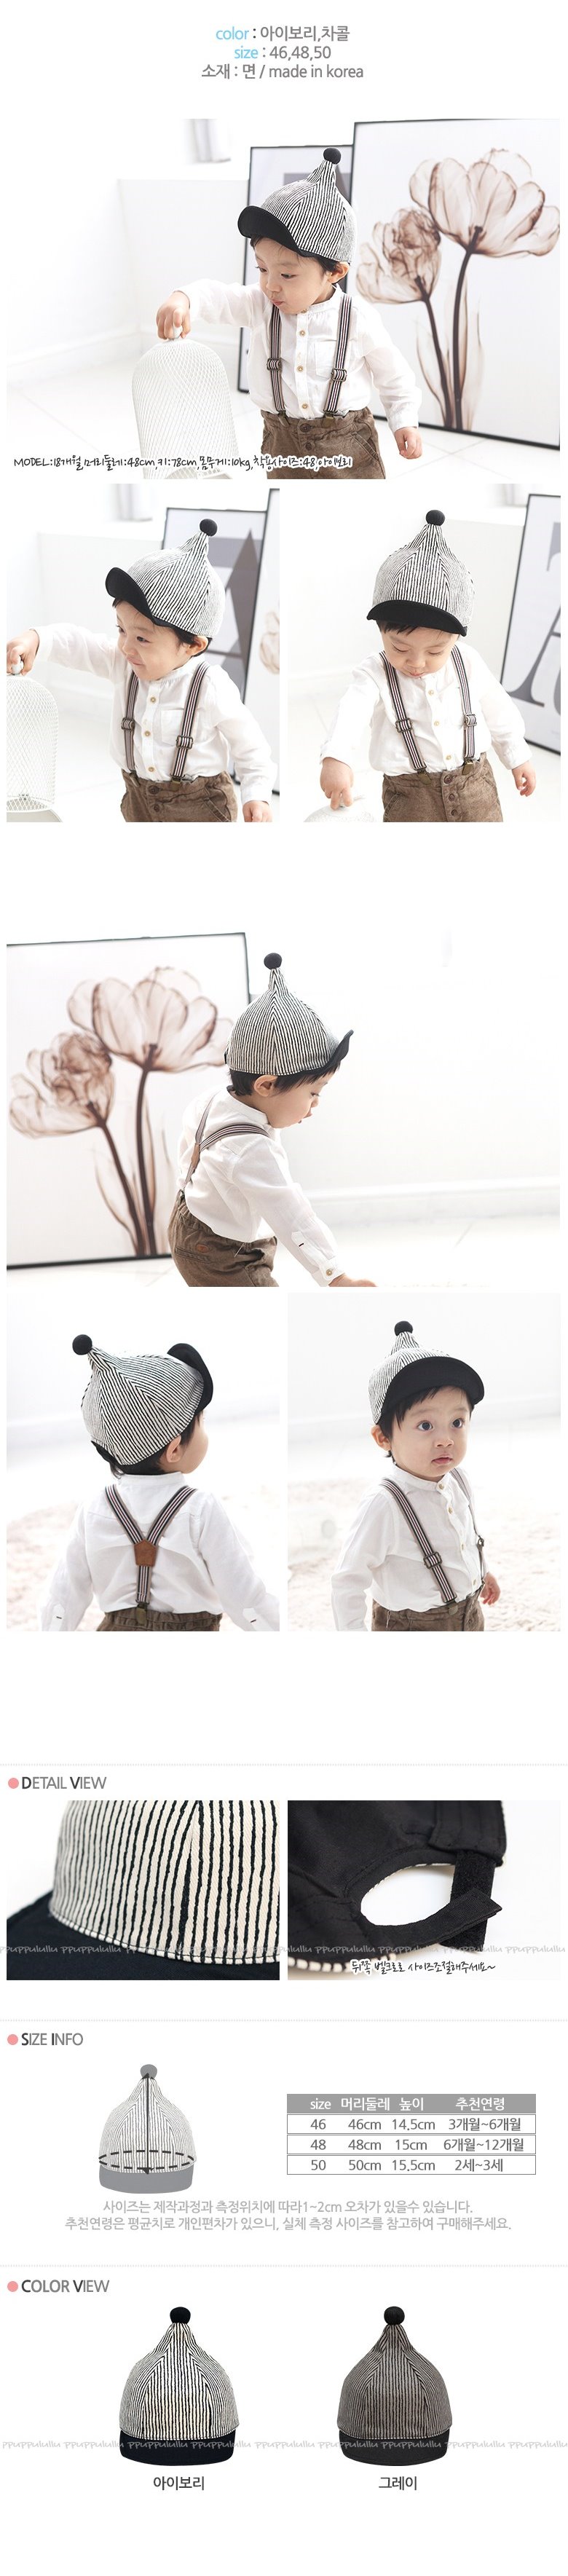 韓國製純棉寶寶帽(頭圍48cm)黑白條紋